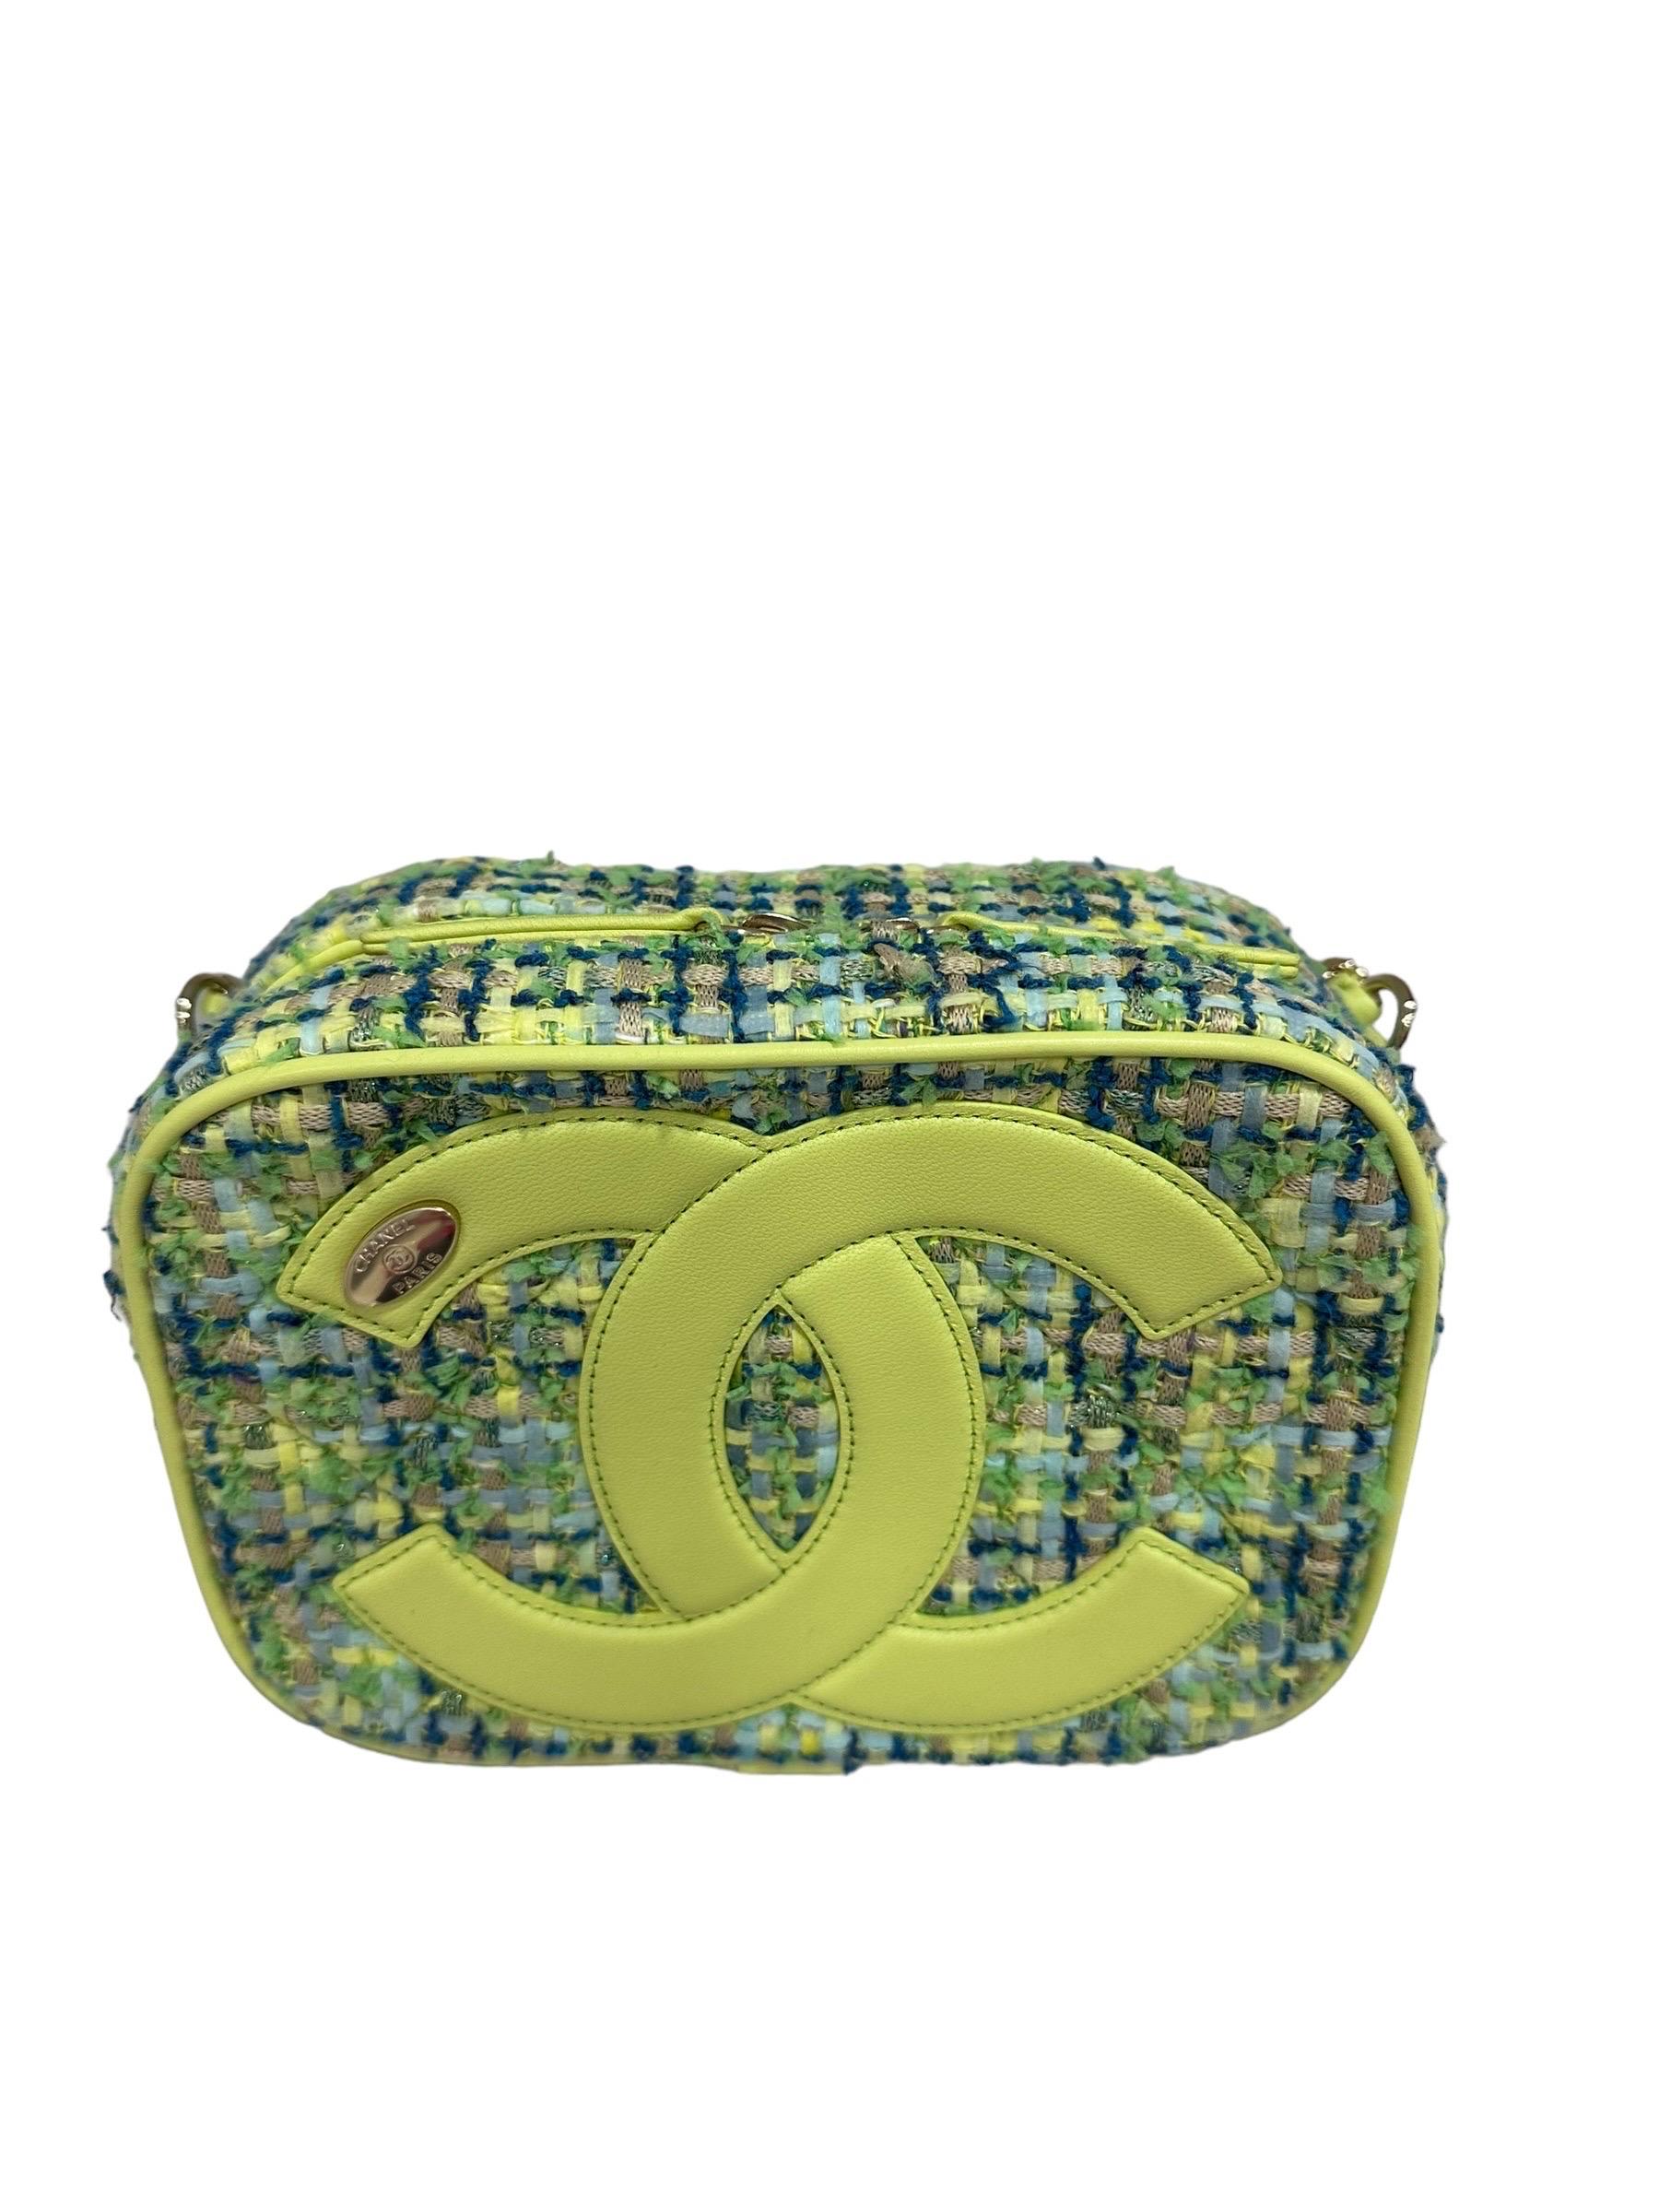 Borsa firmata Chanel, mdoello Camera Bag, realizzat ain tessuto tweed con inserti in pelle color lime e hardware dorati. Dotata di una chisuura superiore con zip, internamente rivestita in tela blu, capiente per l’essenziale. Munita di una tracolla